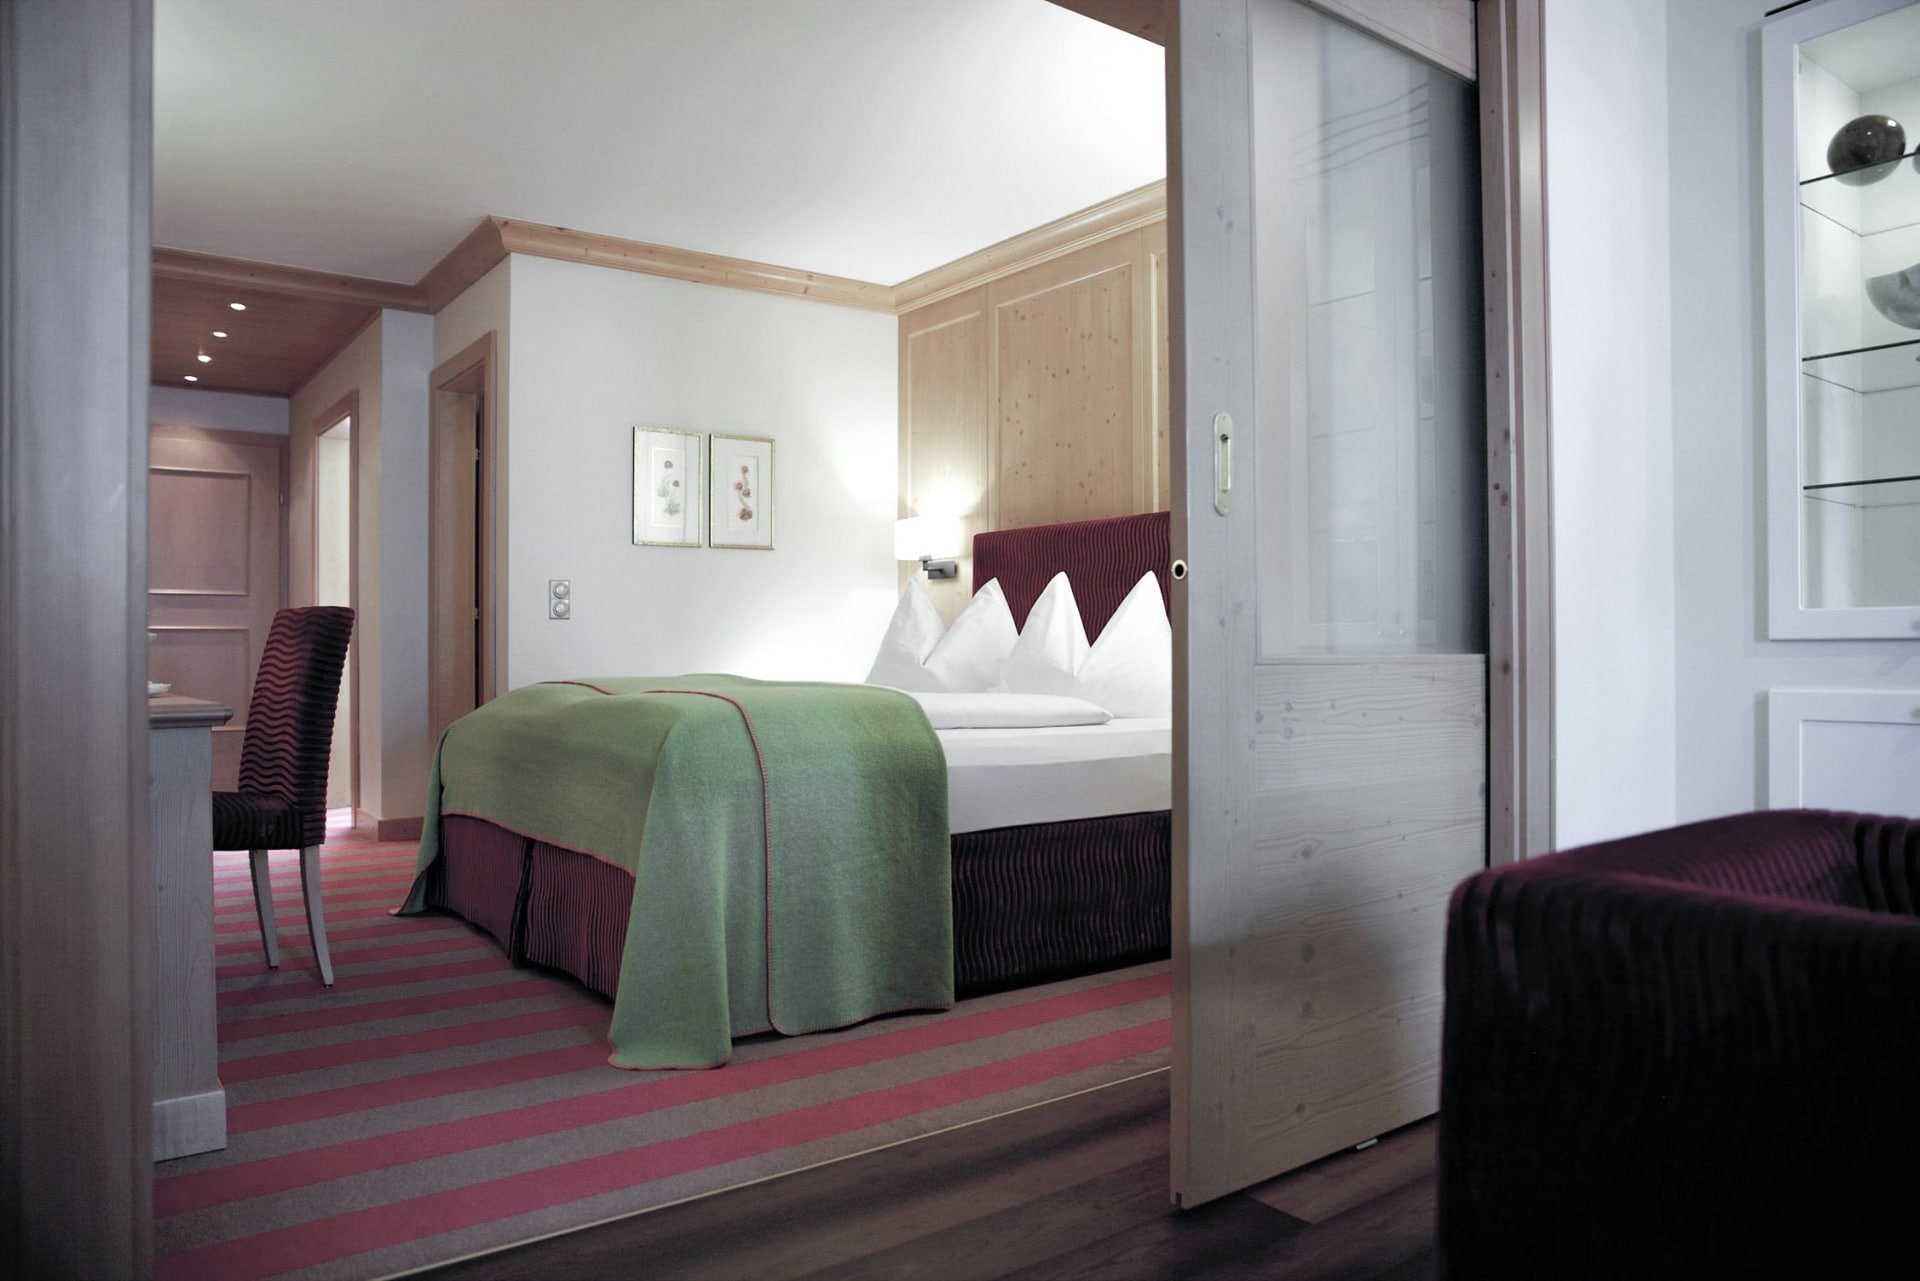 Ein modernes und gemütliches Hotelzimmer mit einem ordentlich gemachten Bett, warmer Beleuchtung und einer geschmackvollen Mischung aus Holzakzenten und zeitgenössischem Design.